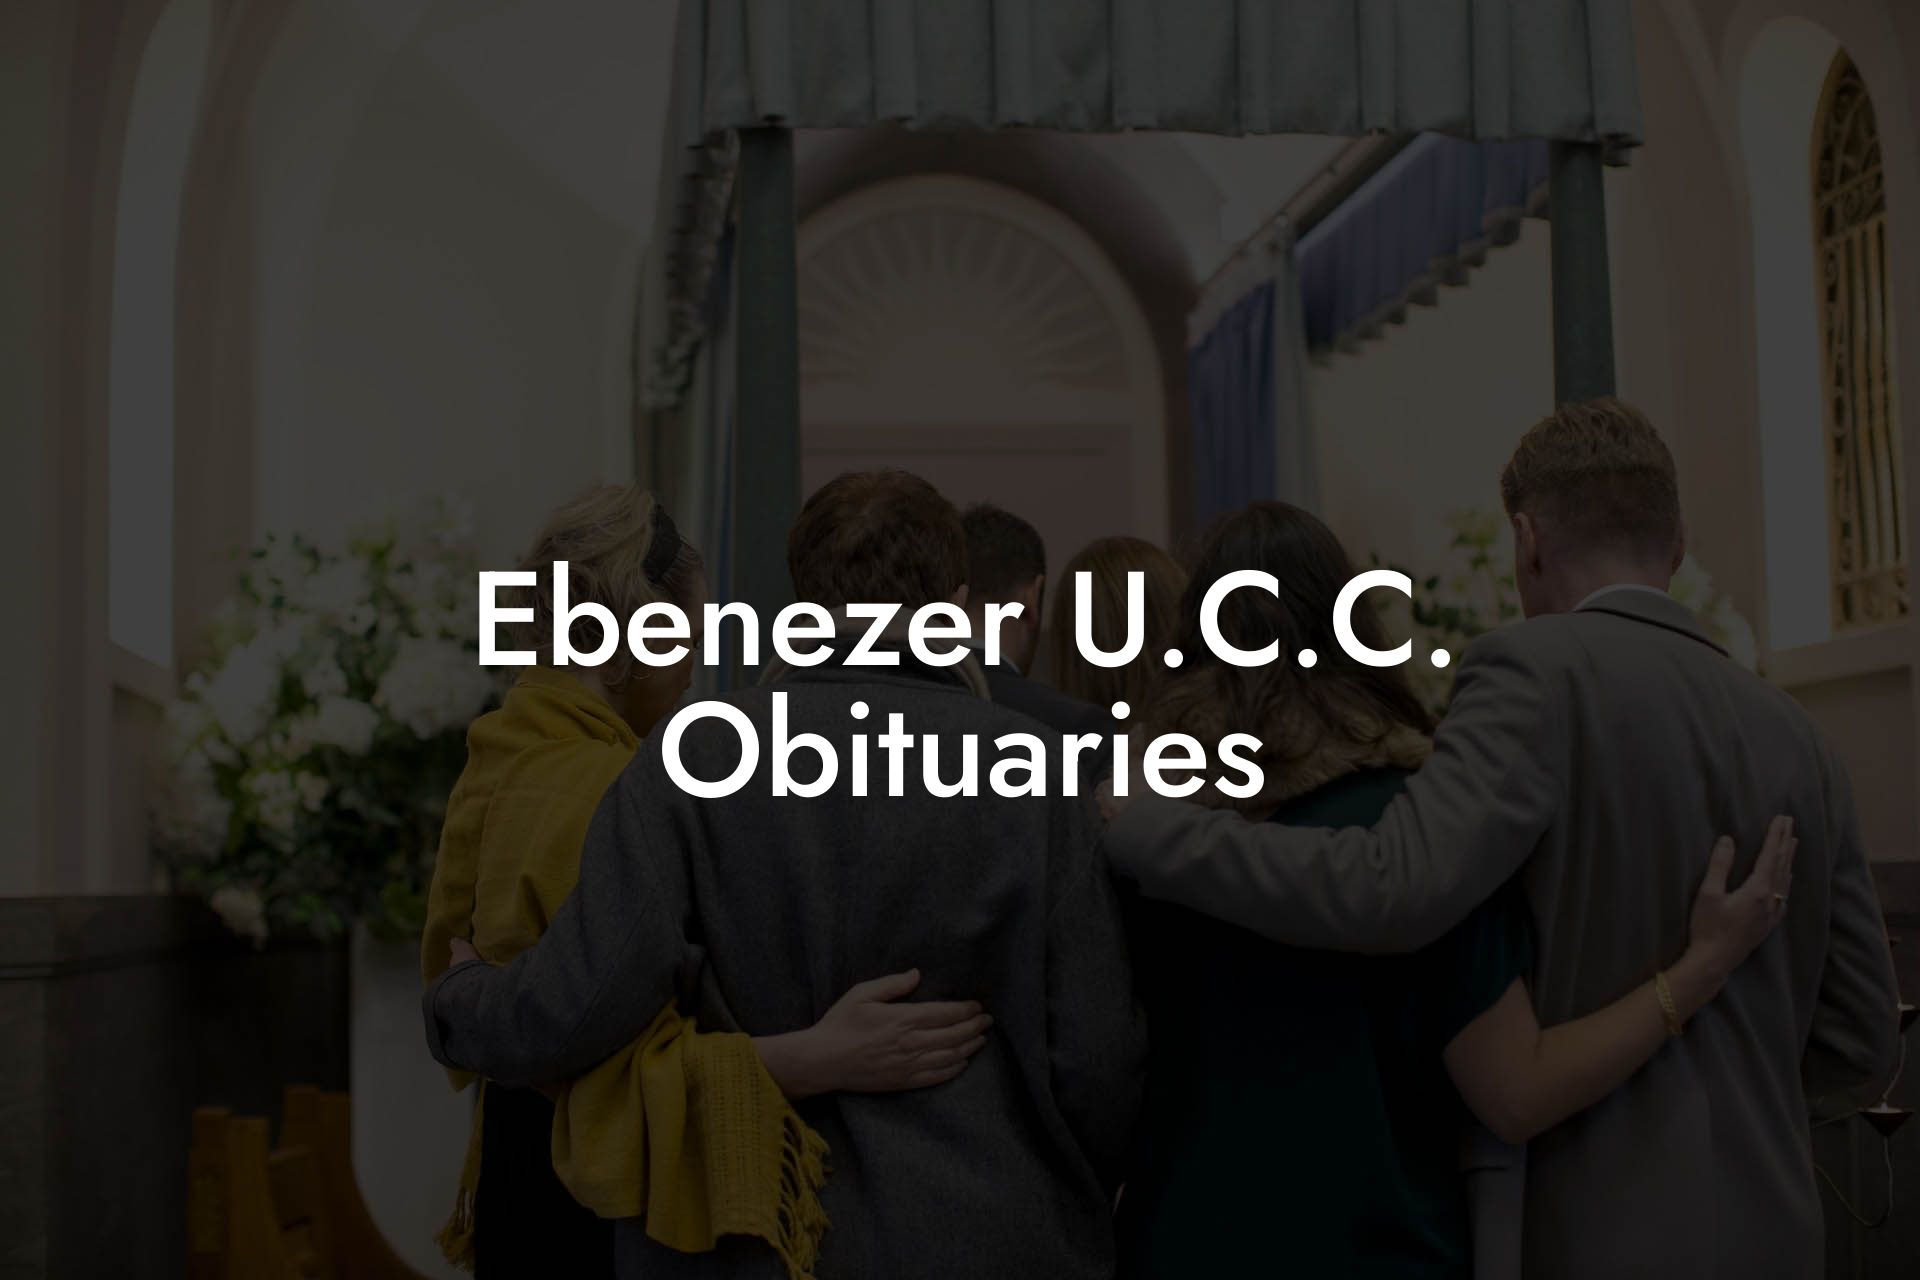 Ebenezer U.C.C. Obituaries